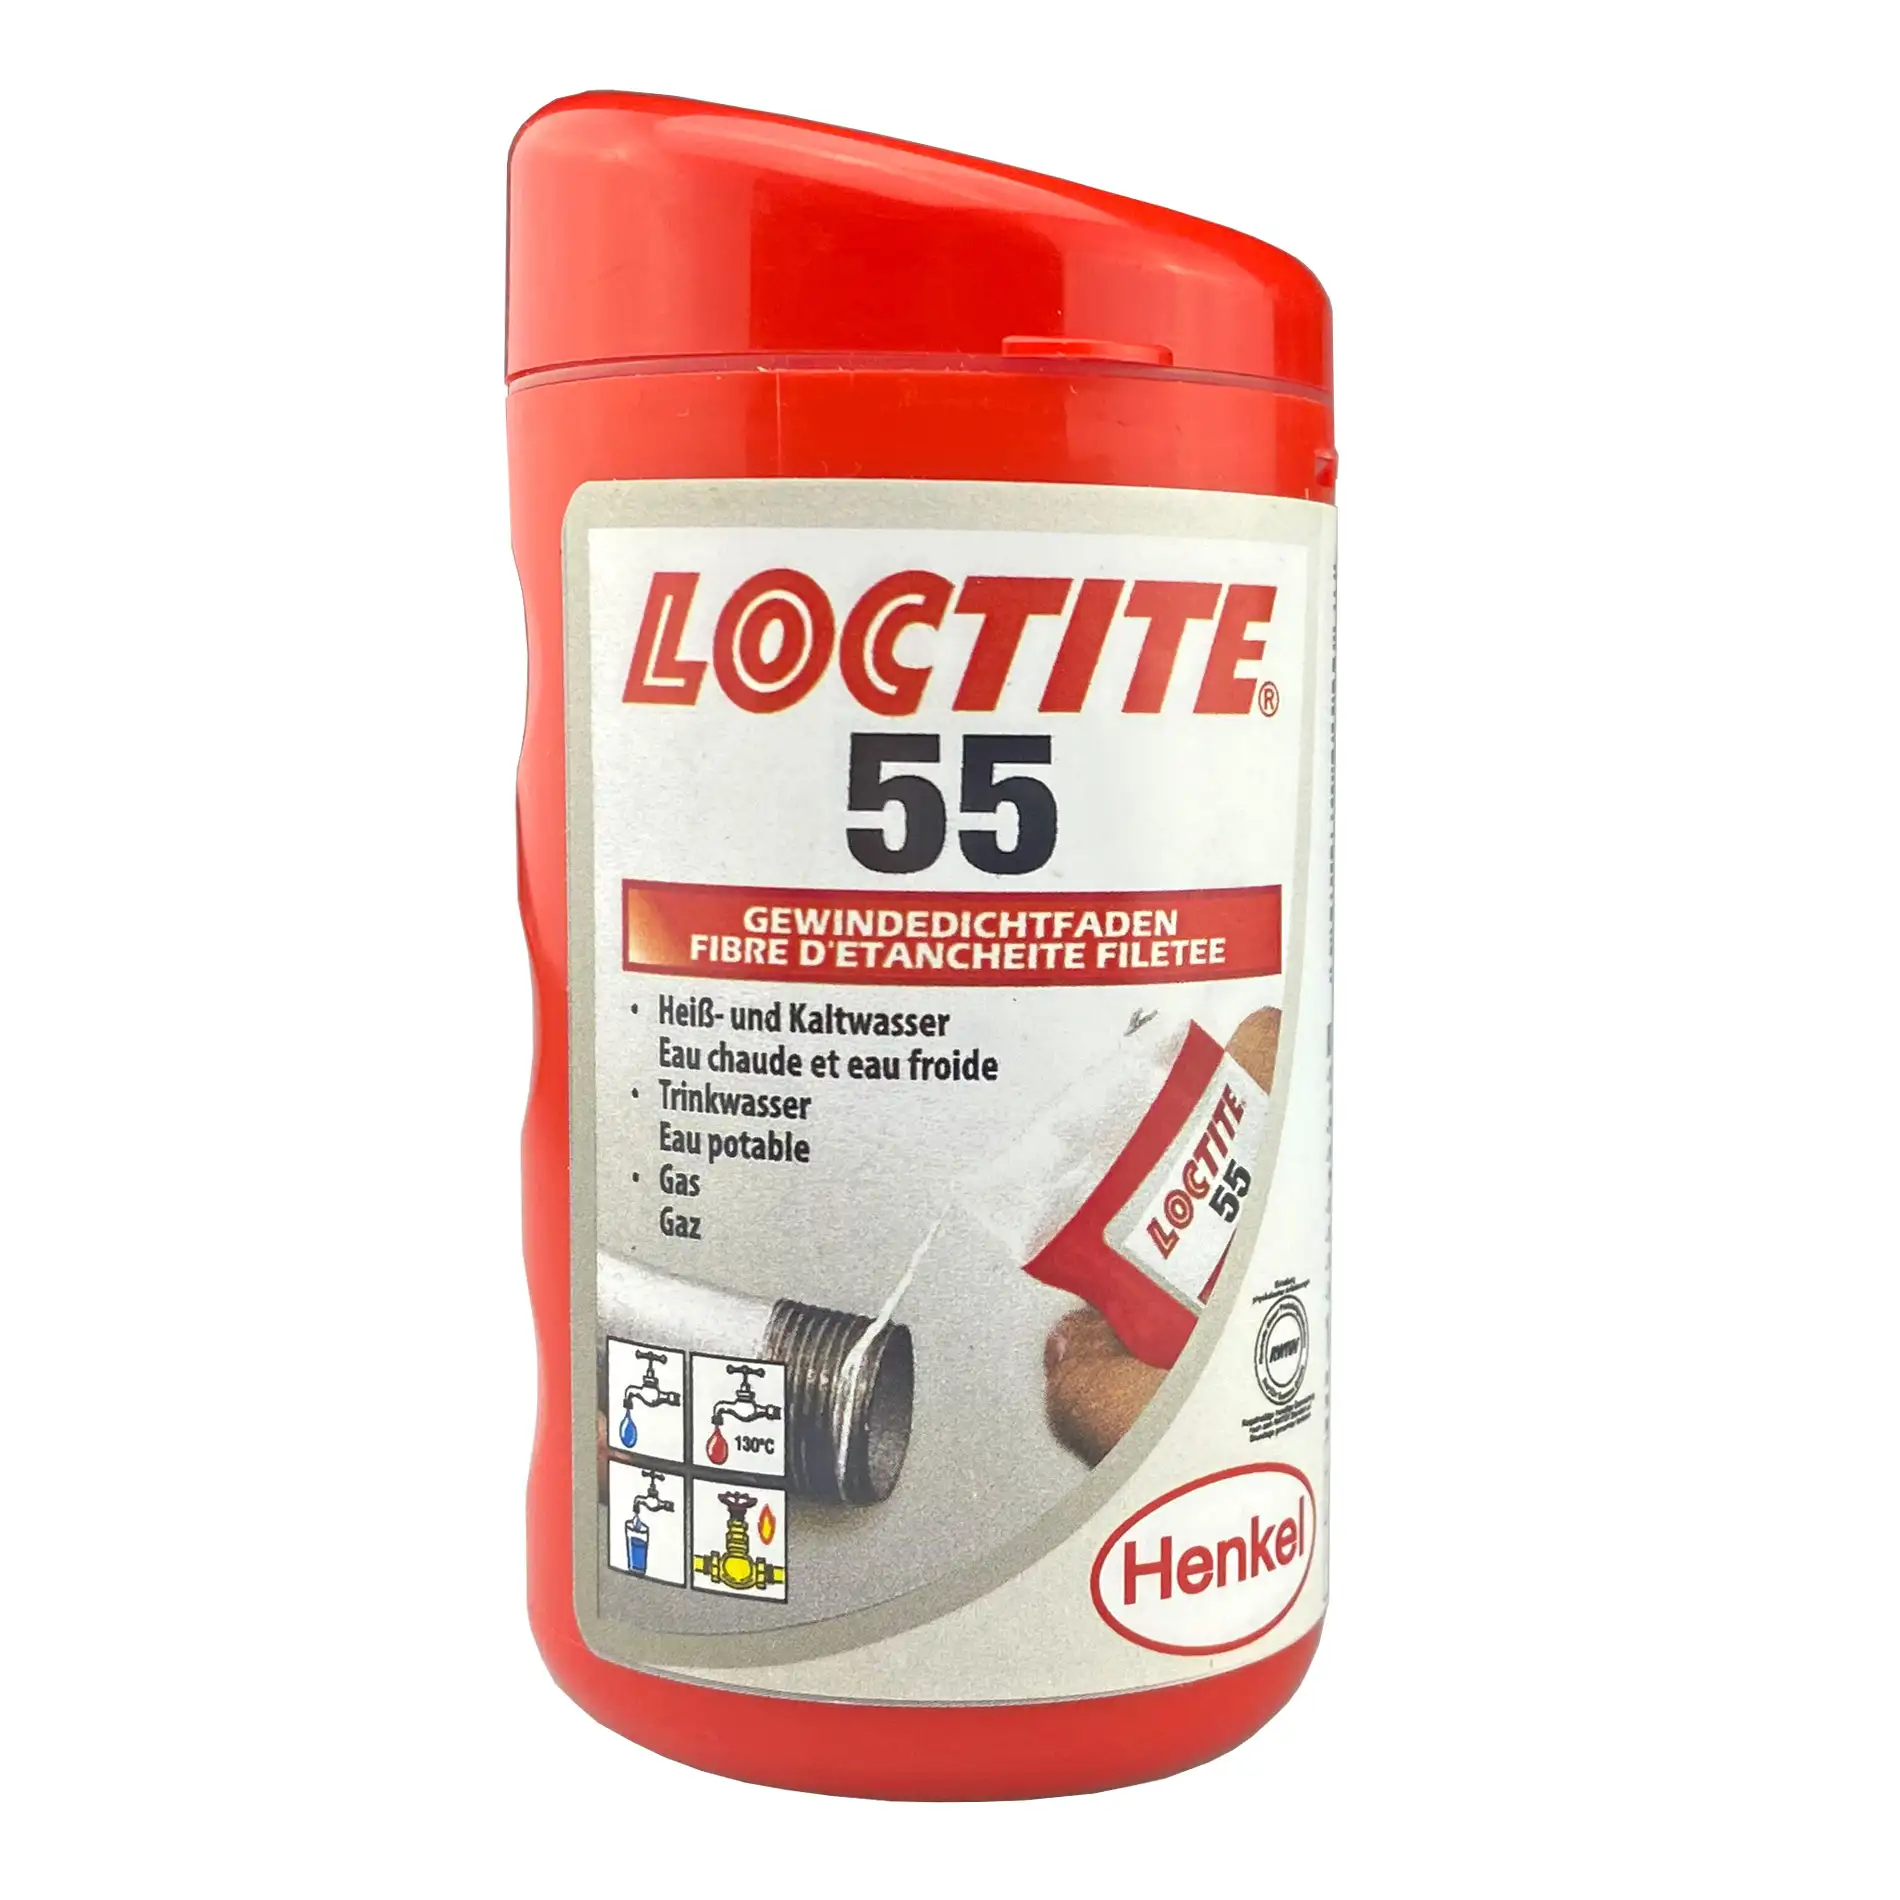 Loctite 55 Gewindedichtfaden Bild 2